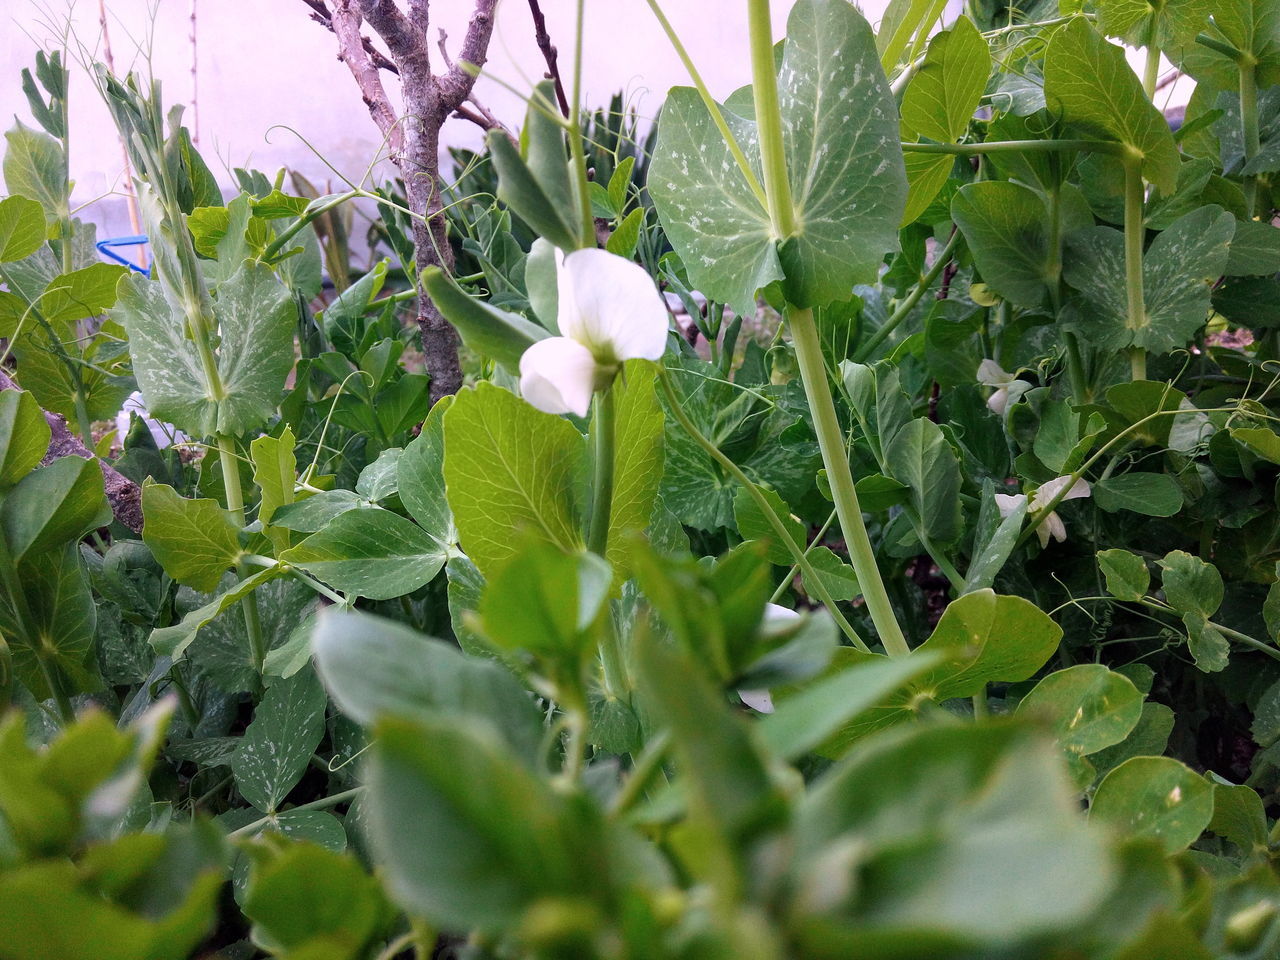 Peas flower